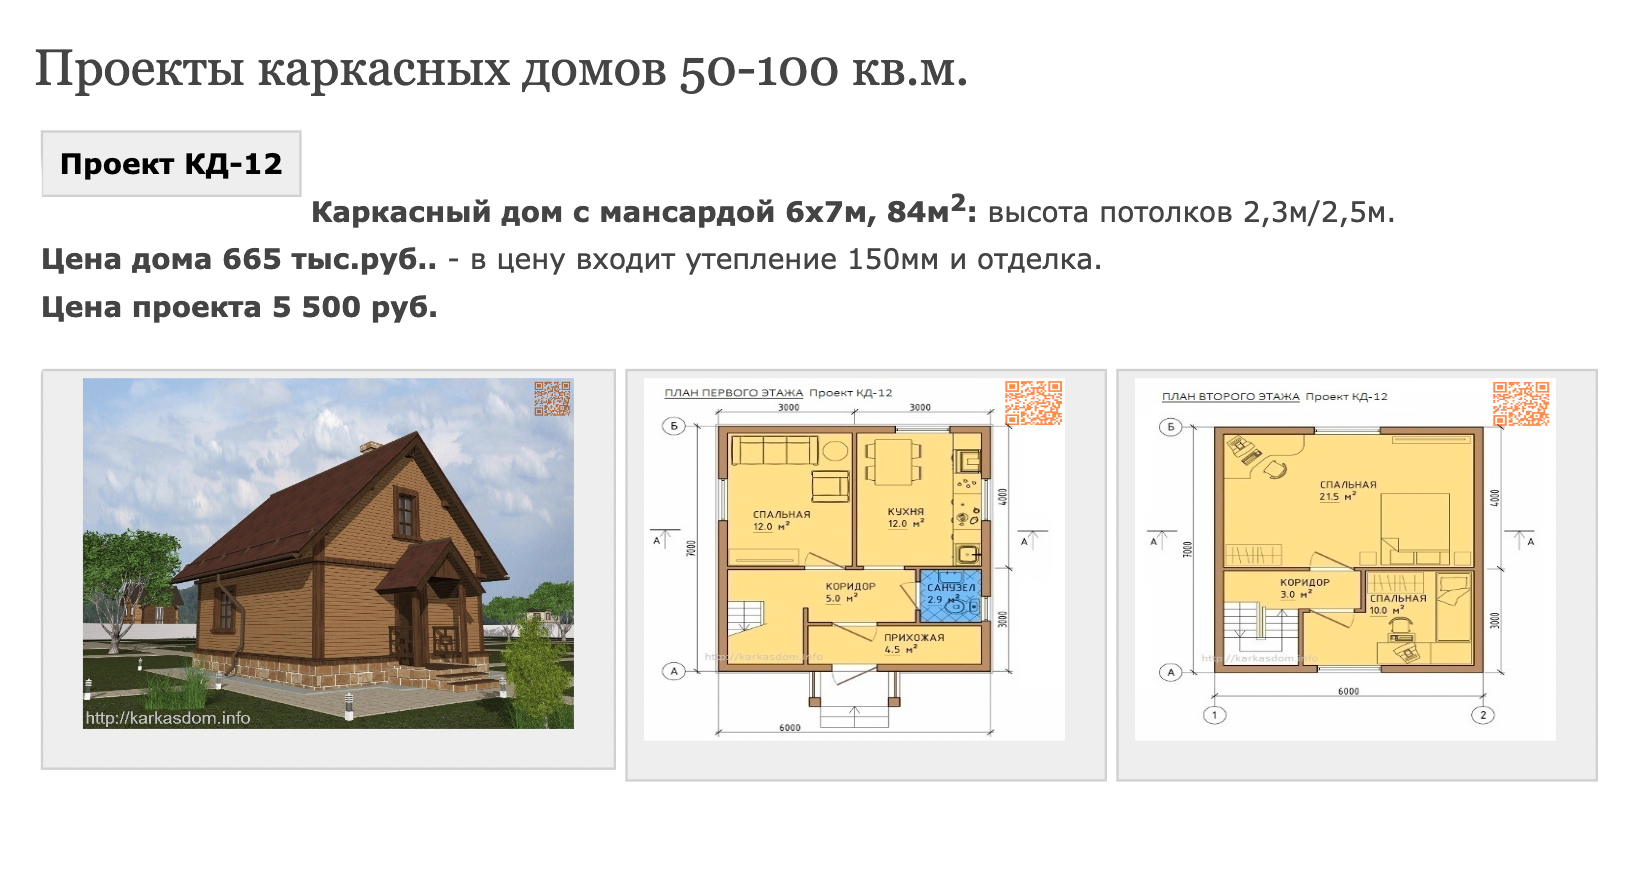 Строительство домов под ключ в Перми и Пермском крае